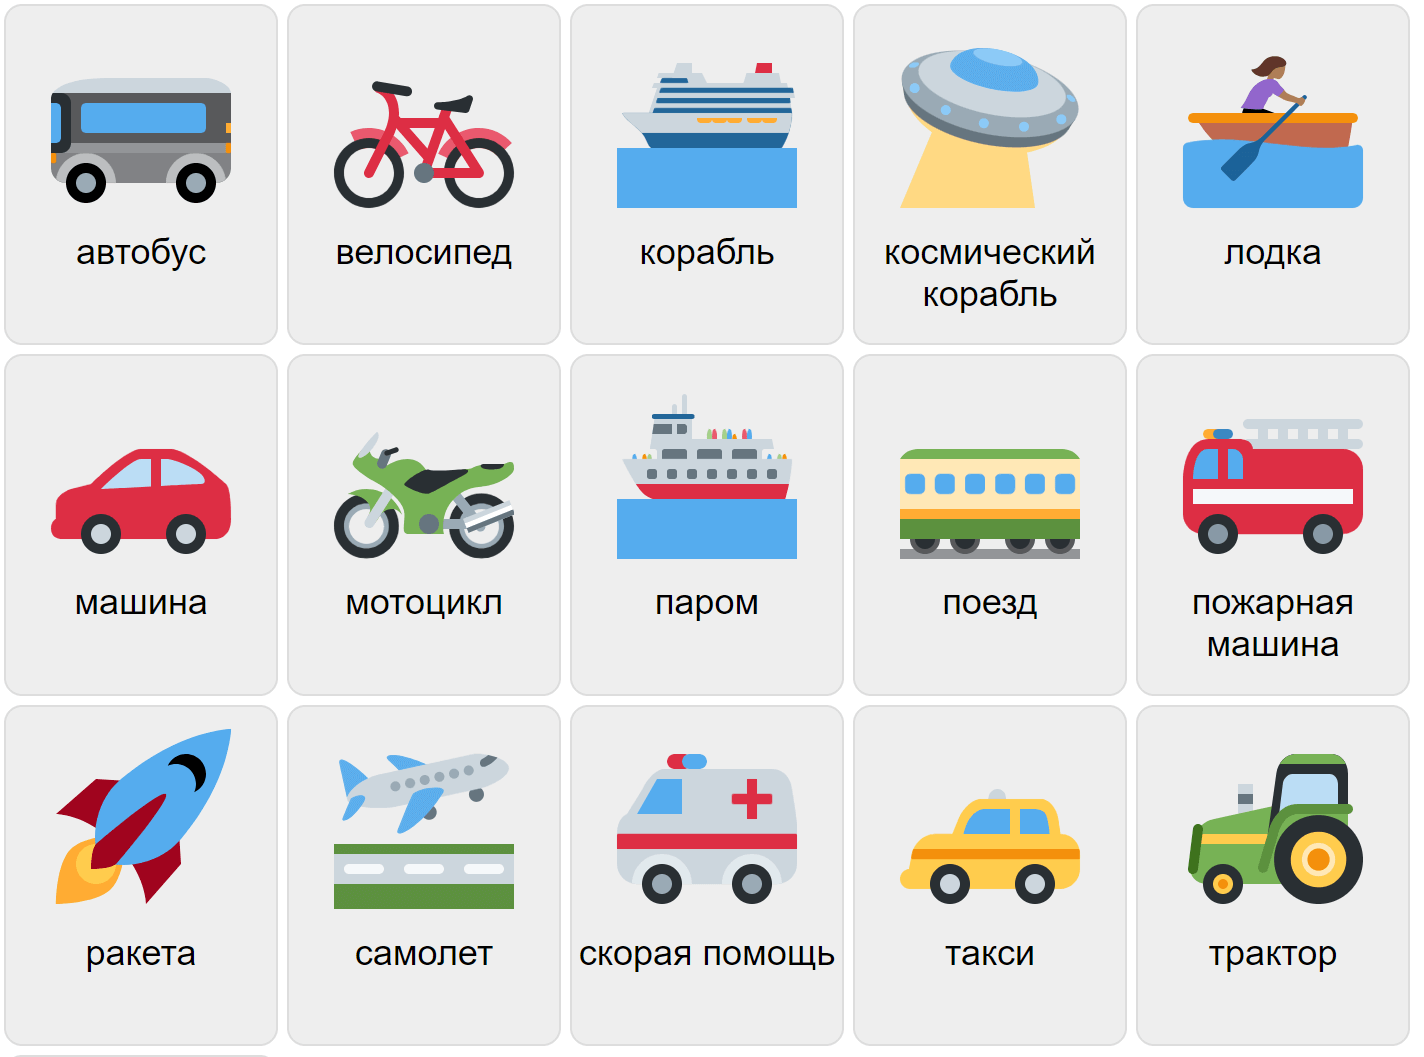 Transport in Russian